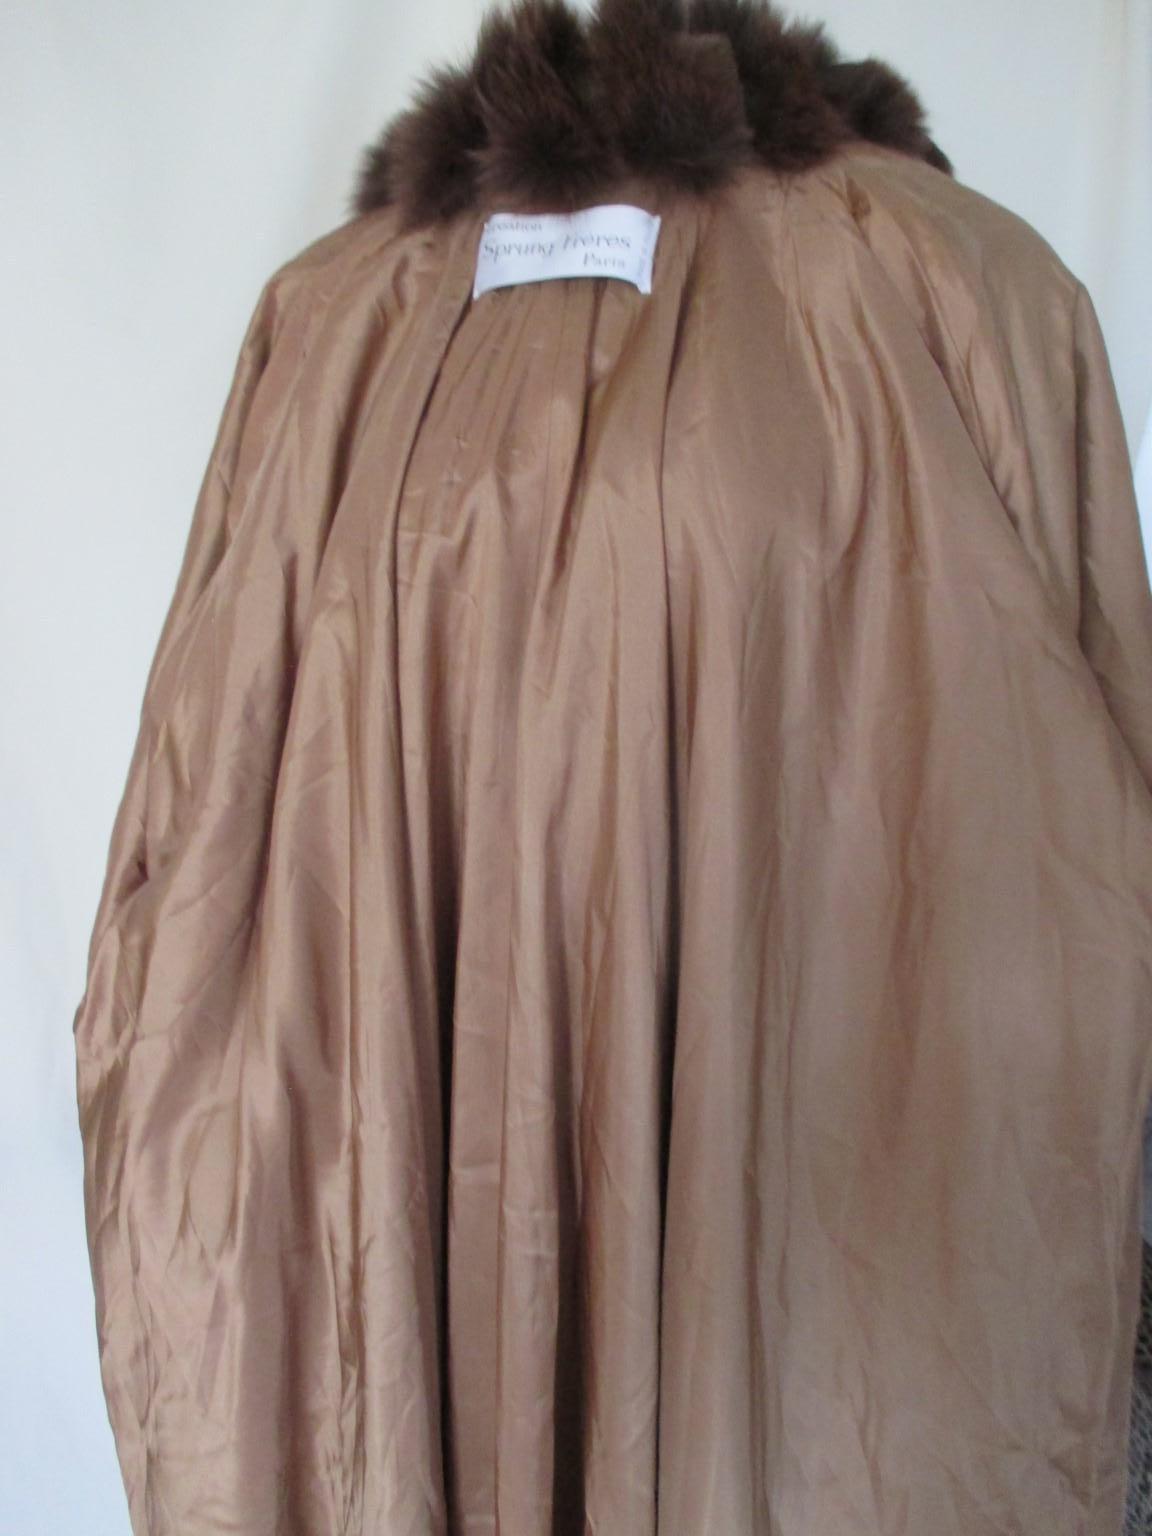 Sprung Freres Paris Brown Cashmere Fur Stole Cape For Sale 4